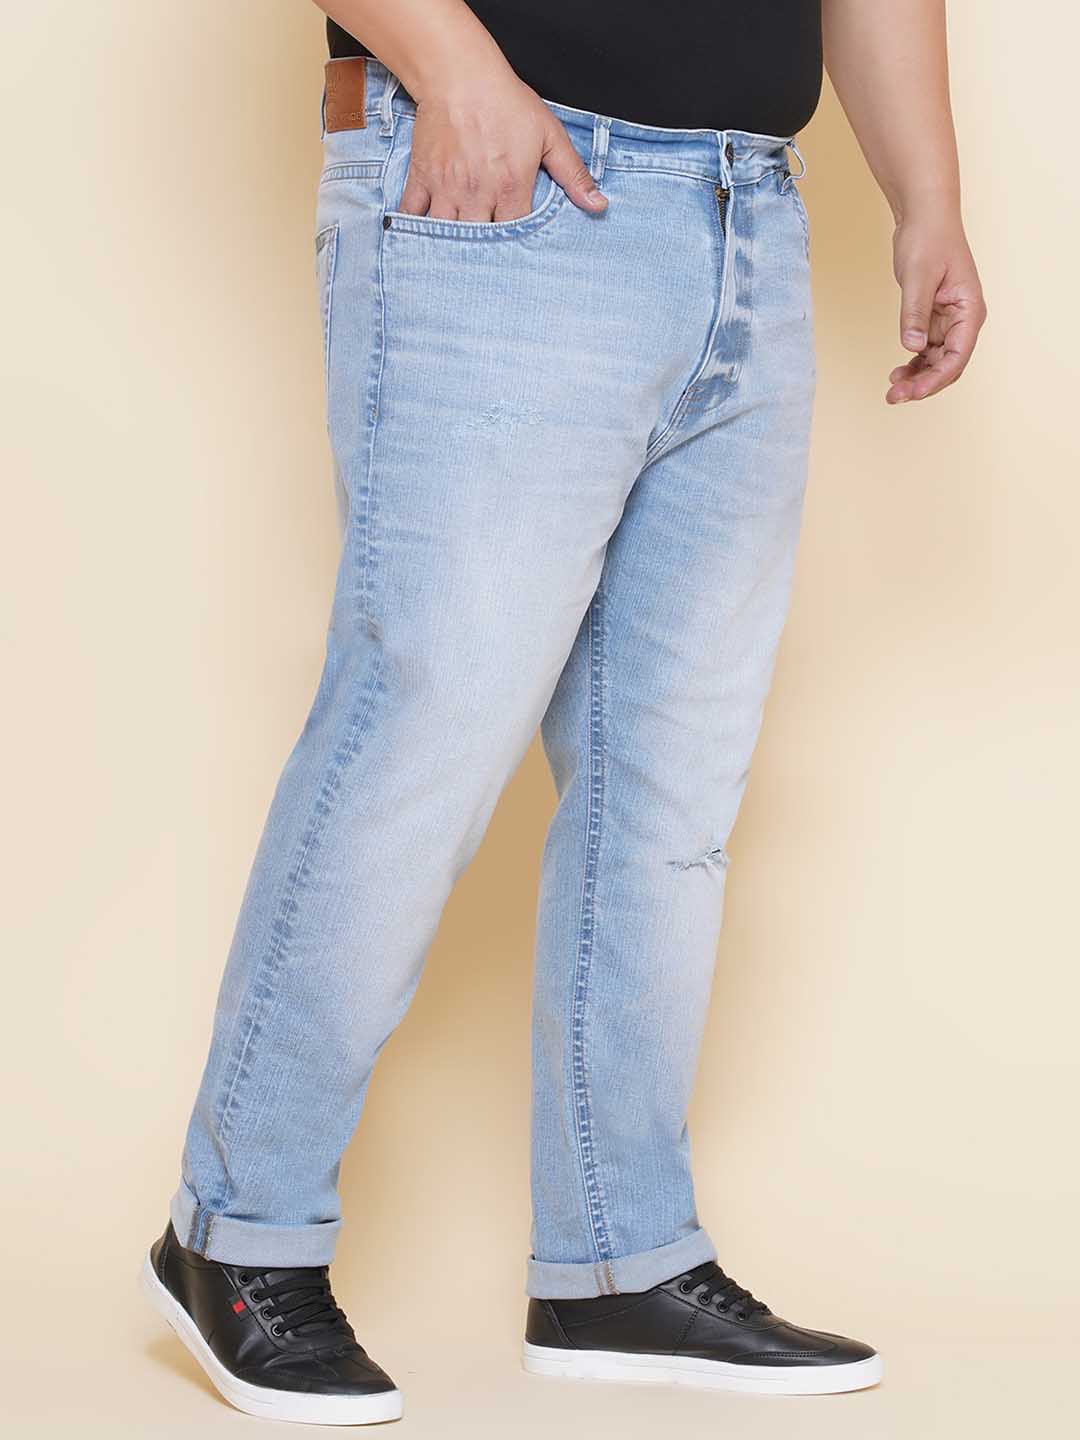 bottomwear/jeans/JPJ27110/jpj27110-3.jpg